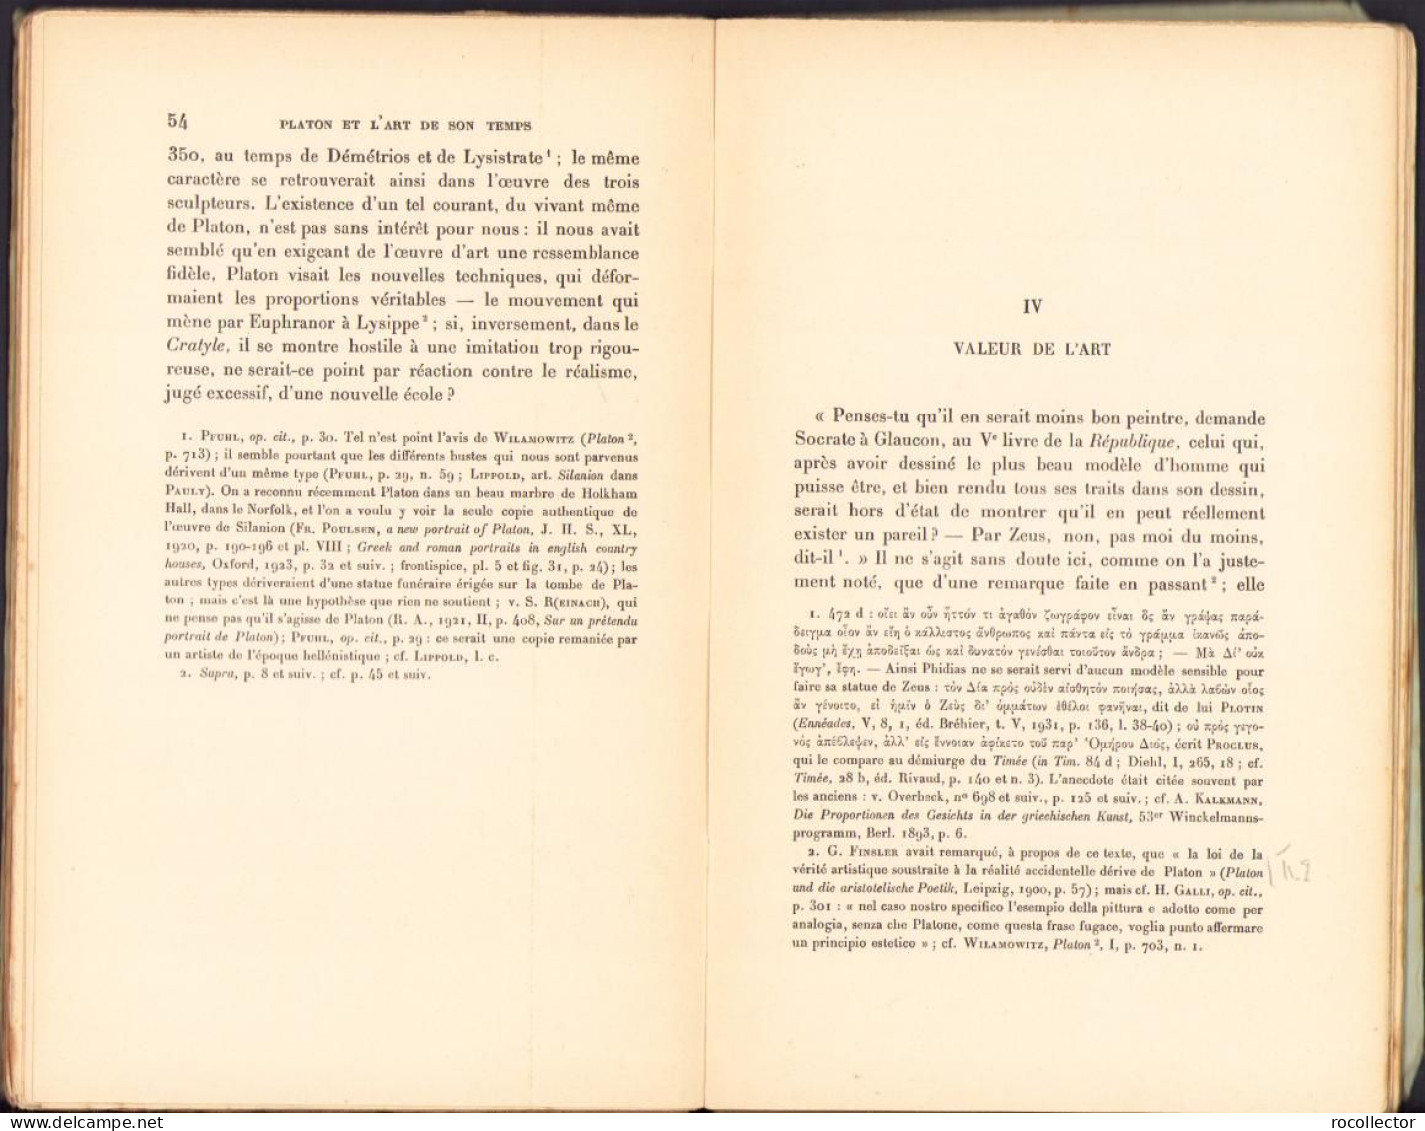 Platon et l’art de son temps (arts plastiques) de Pierre Maxime Schuhl, 1933 C2158